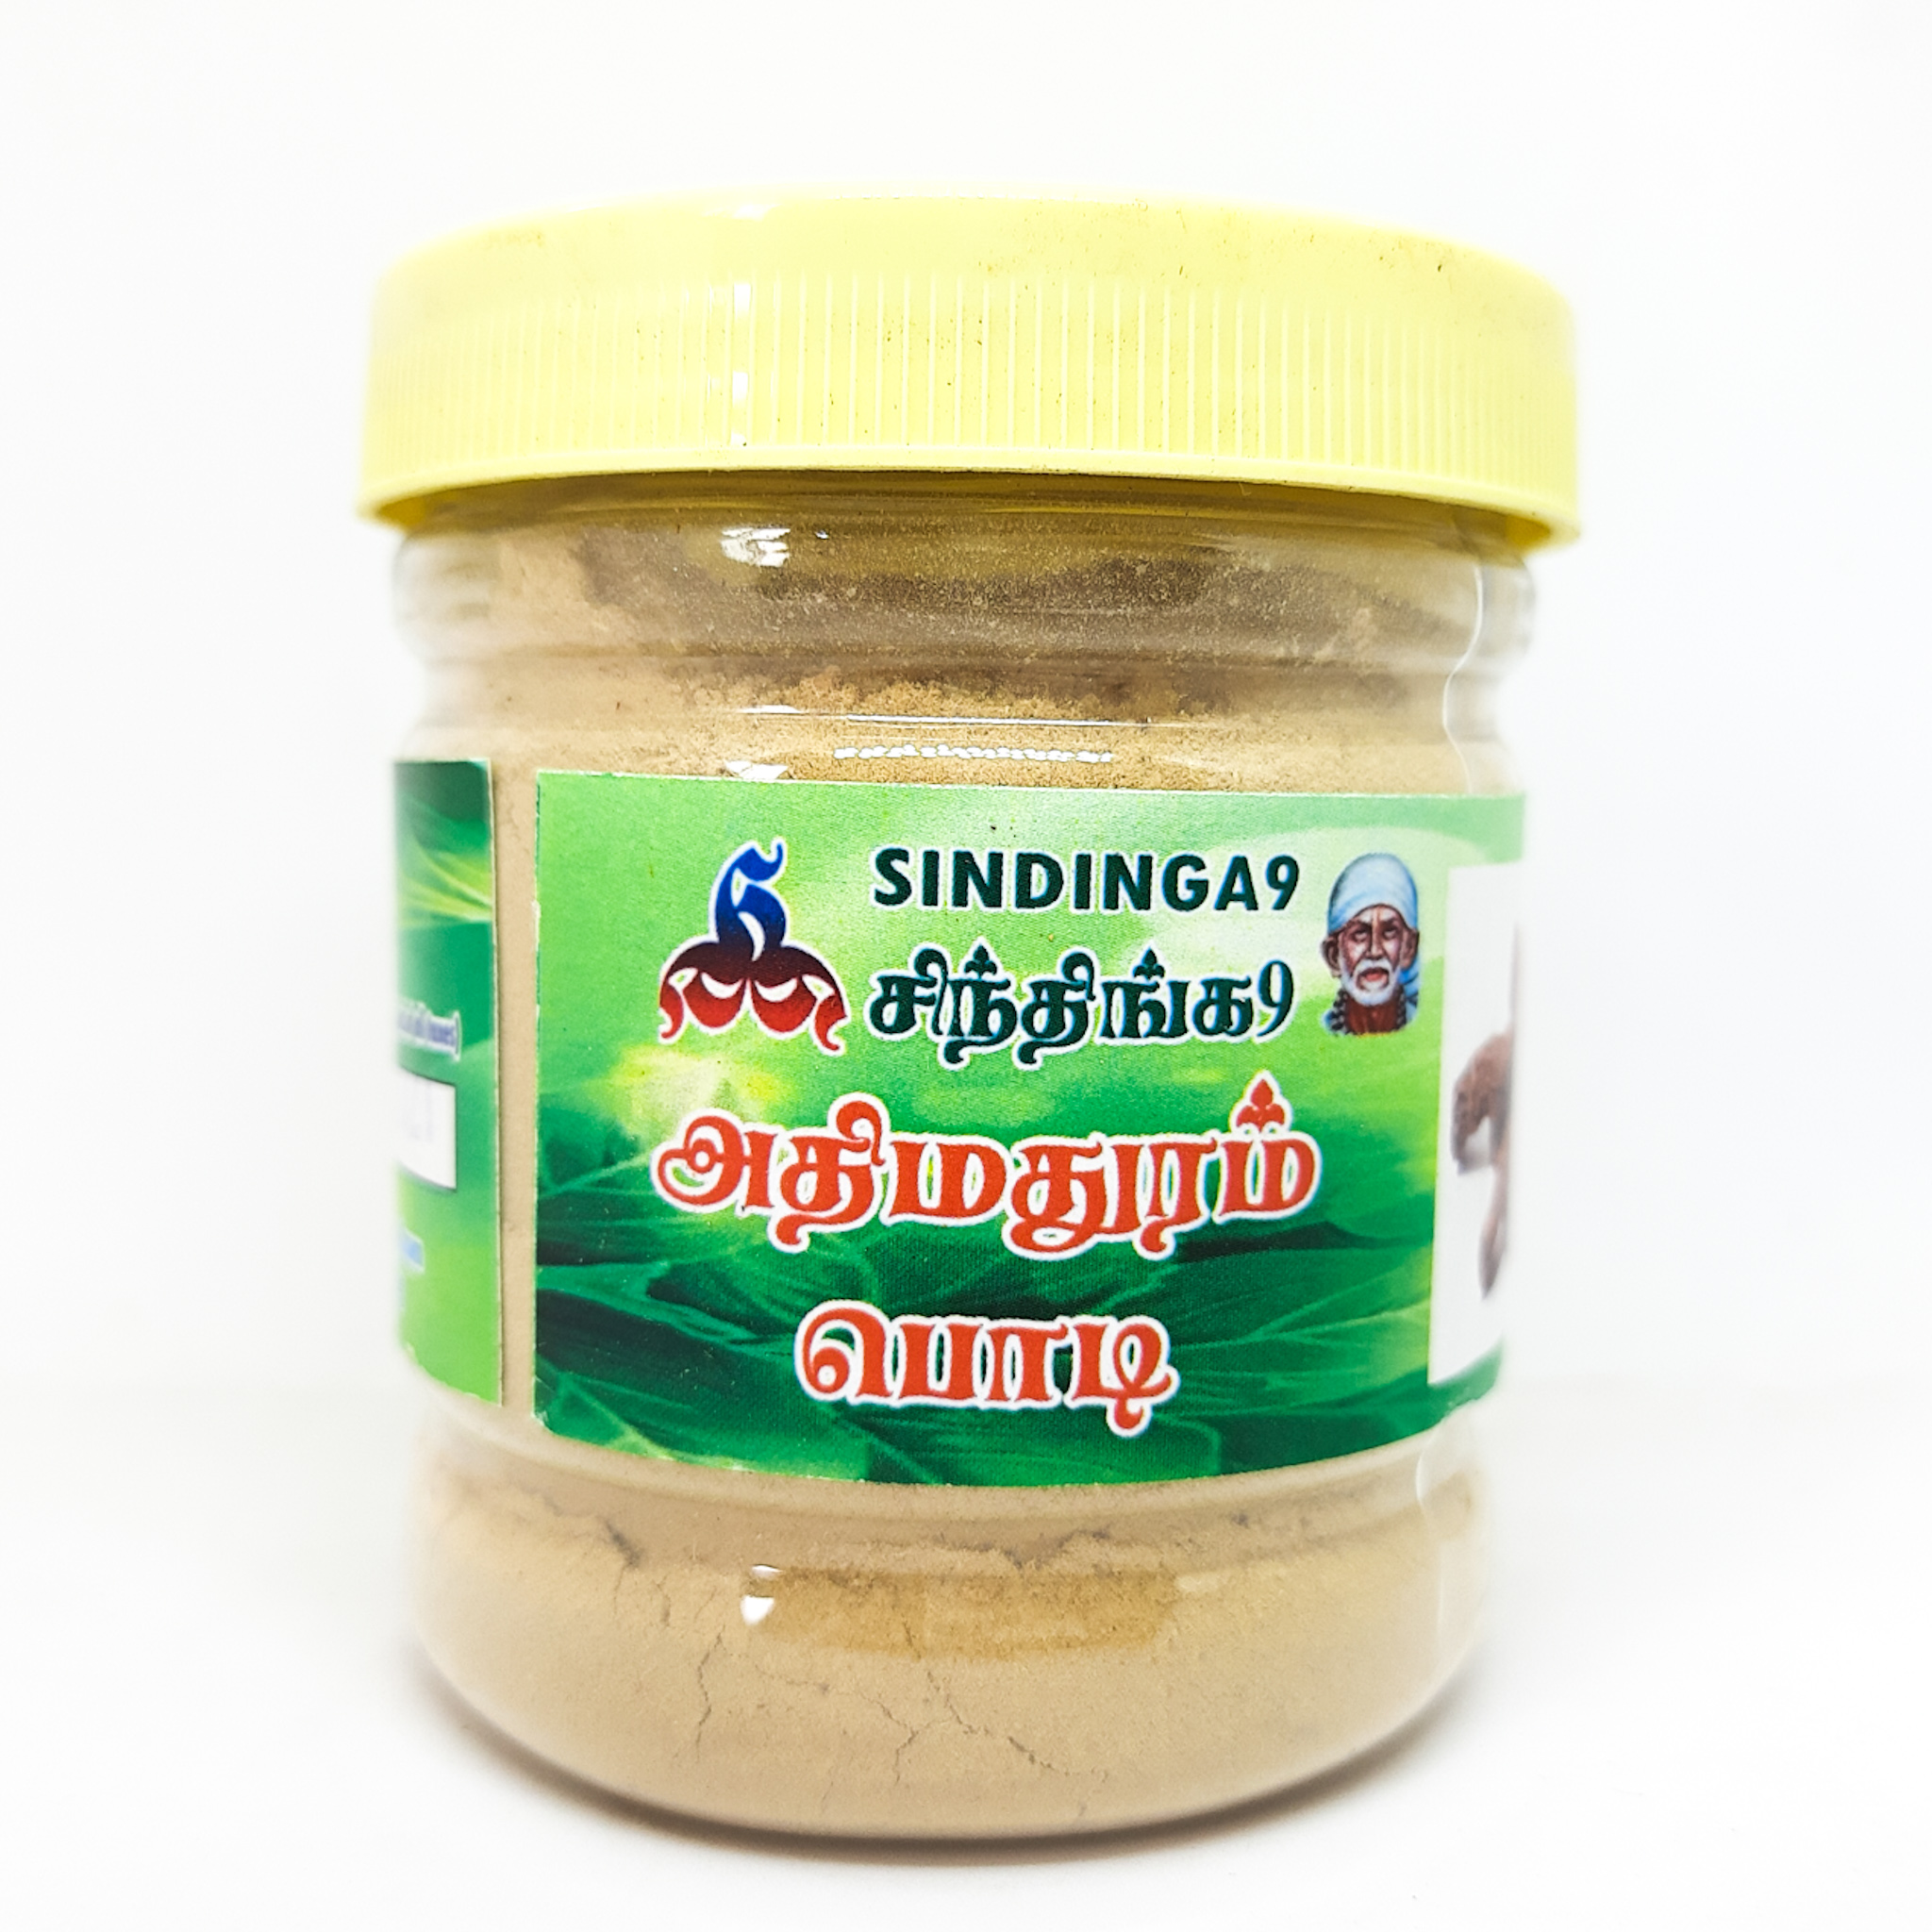 Athimathuram or sweet wood powder